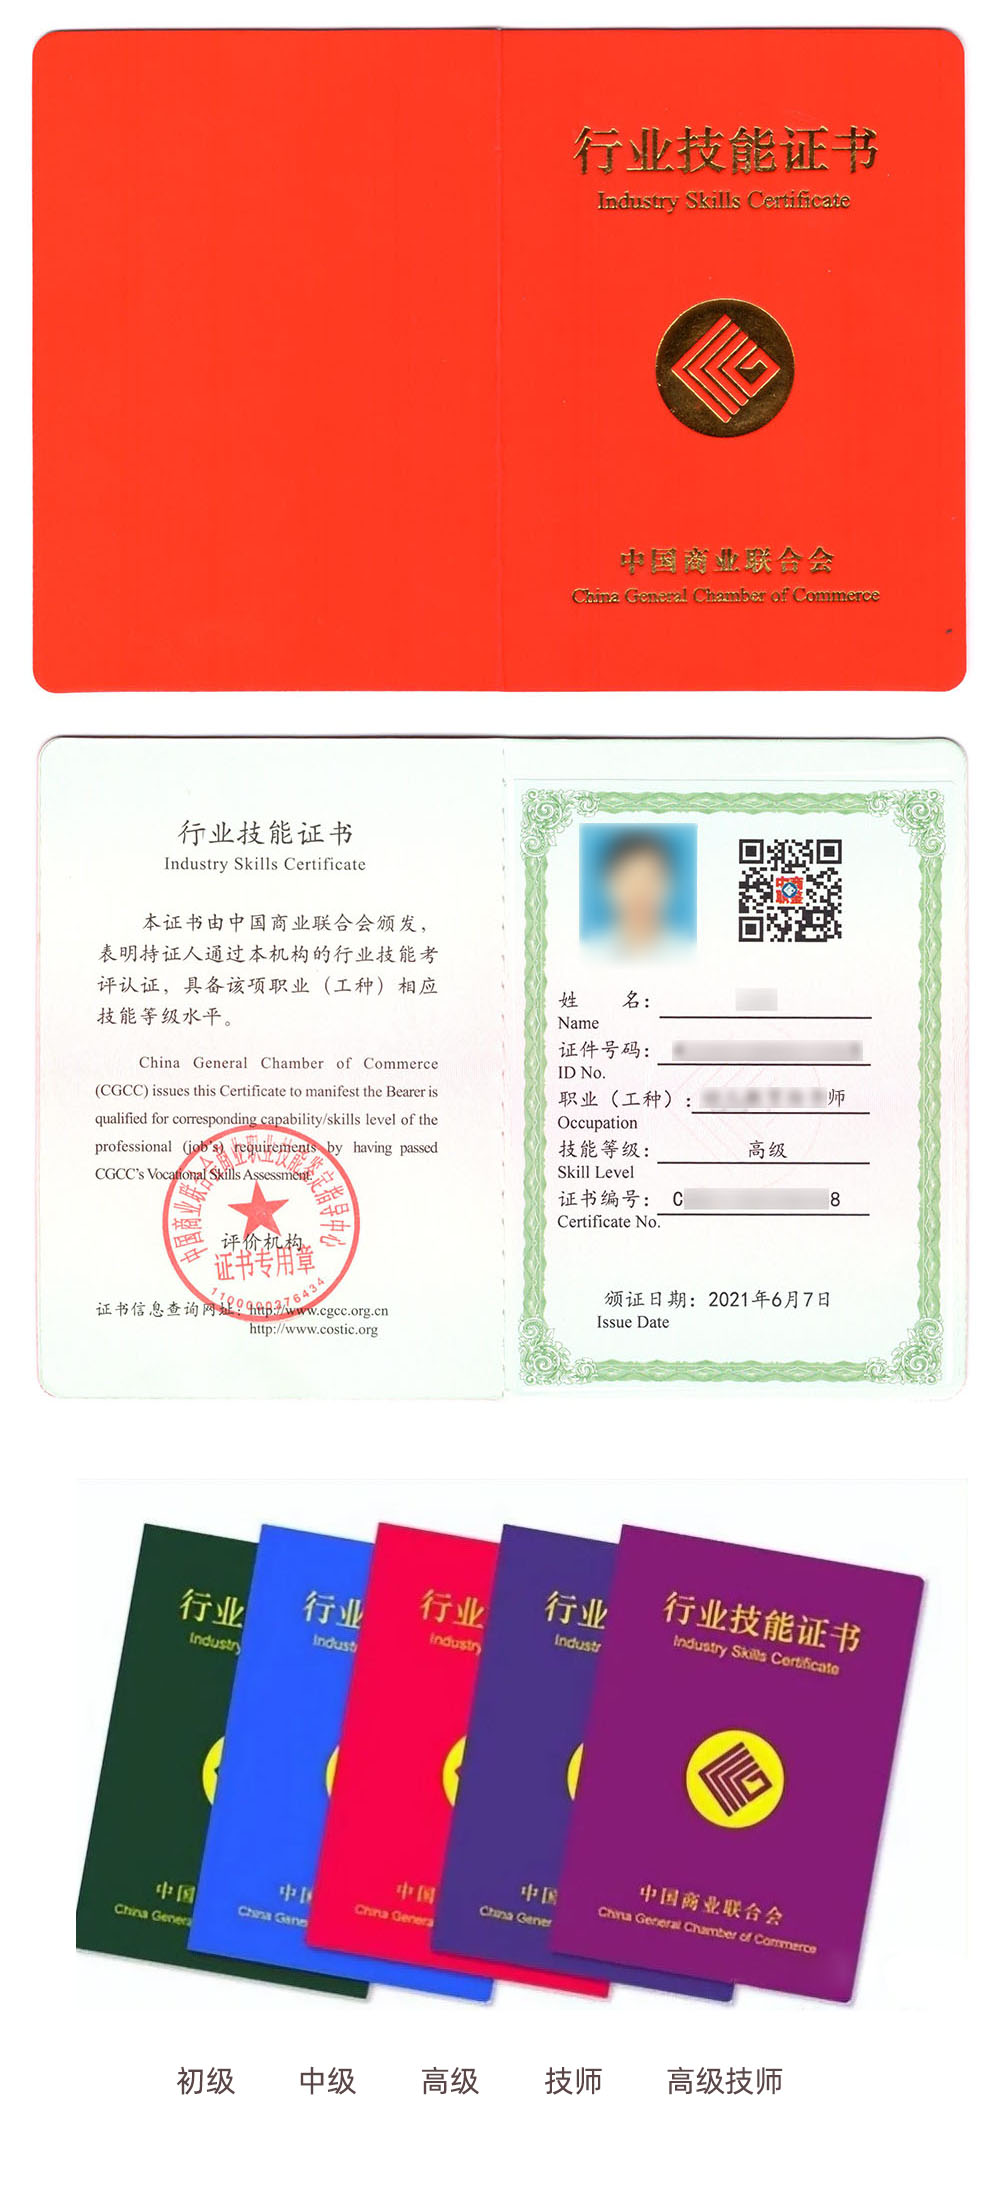 中国商业联合会商业职业技能鉴定中心 行业技能证书 工商管理师证证书样本